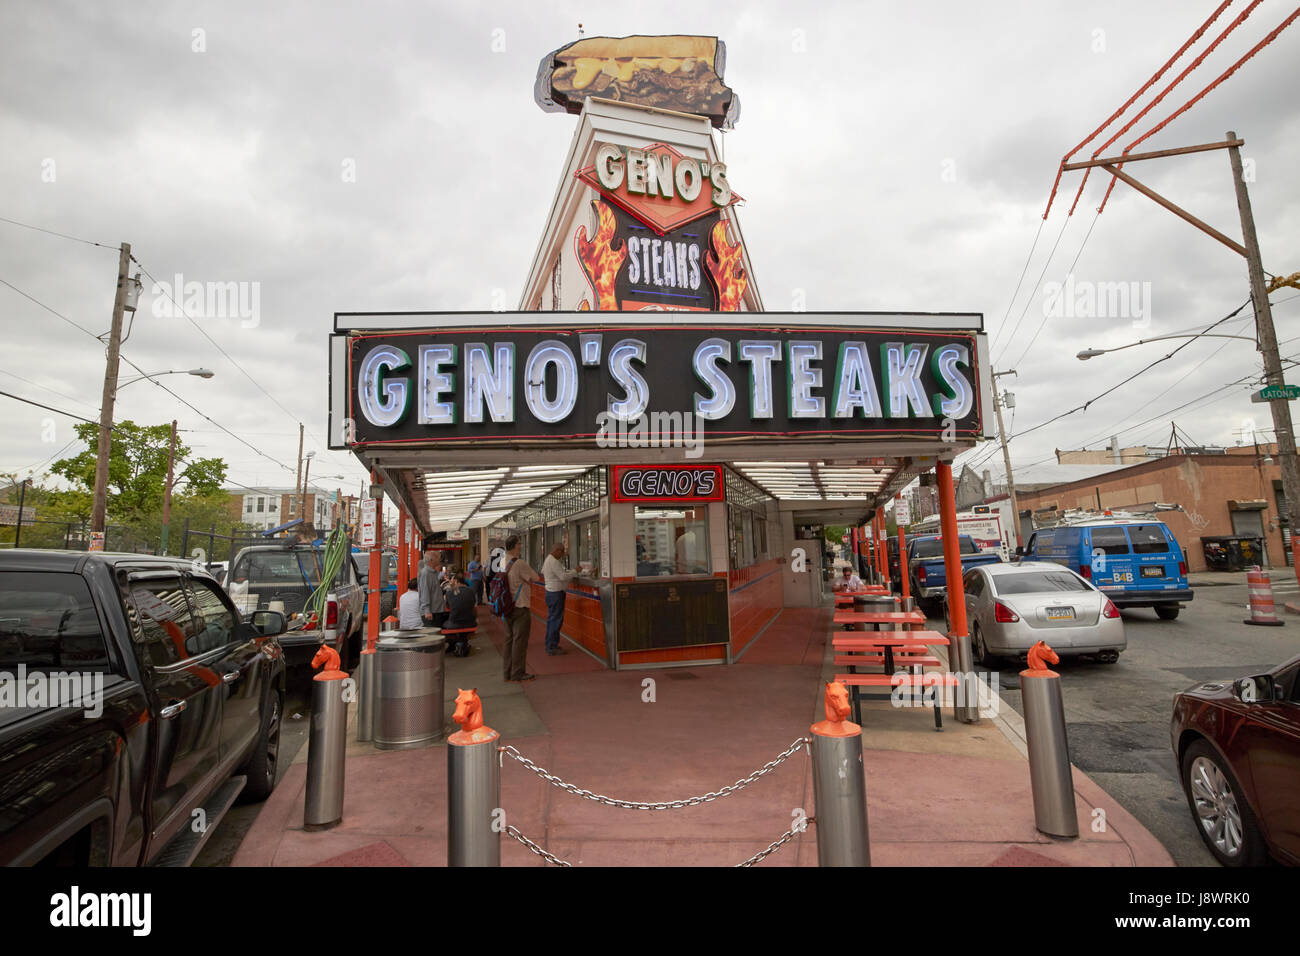 Genos steaks Philadelphie USA Banque D'Images